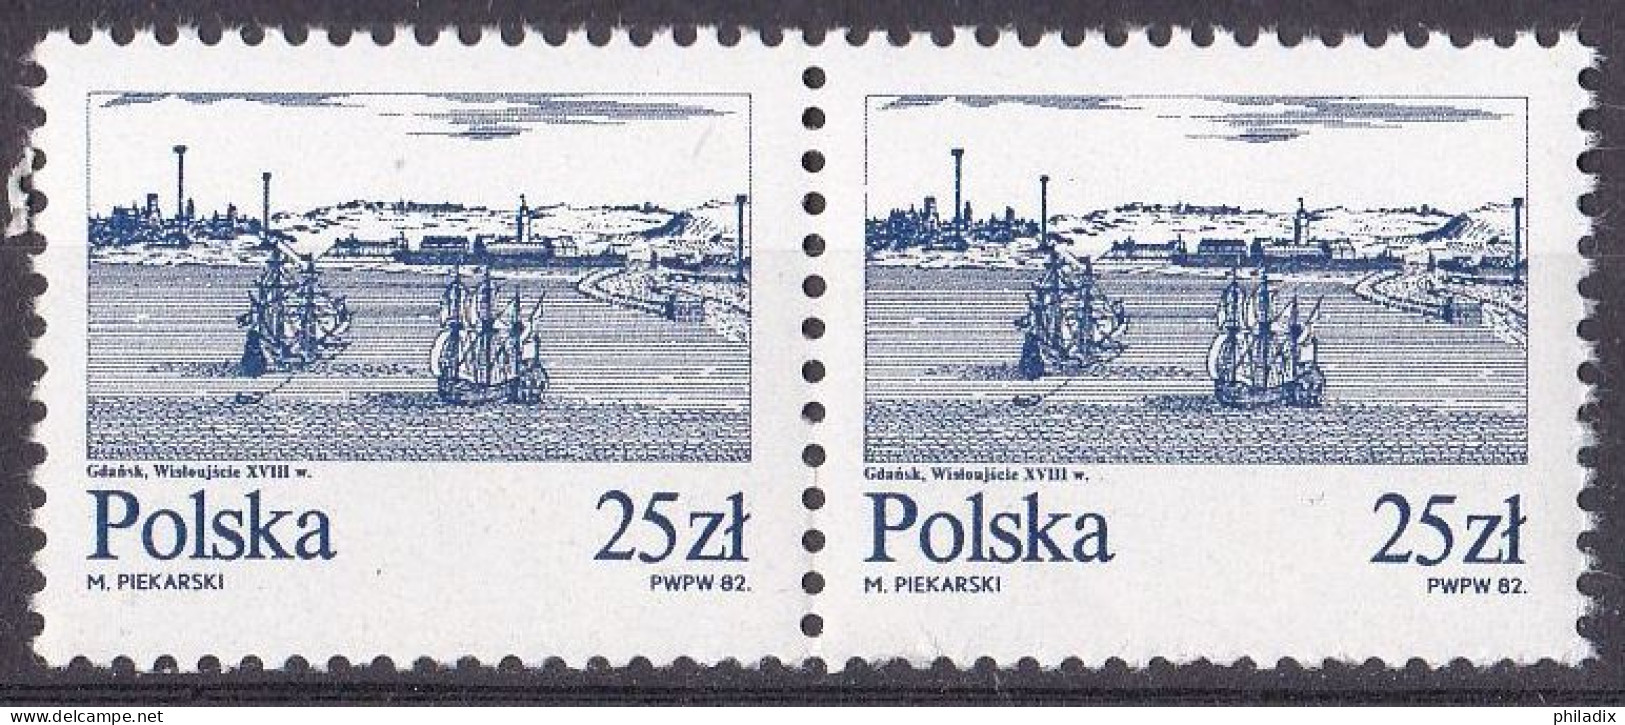 Polen Marke Von 1982 **/MNH (A5-16) - Unused Stamps